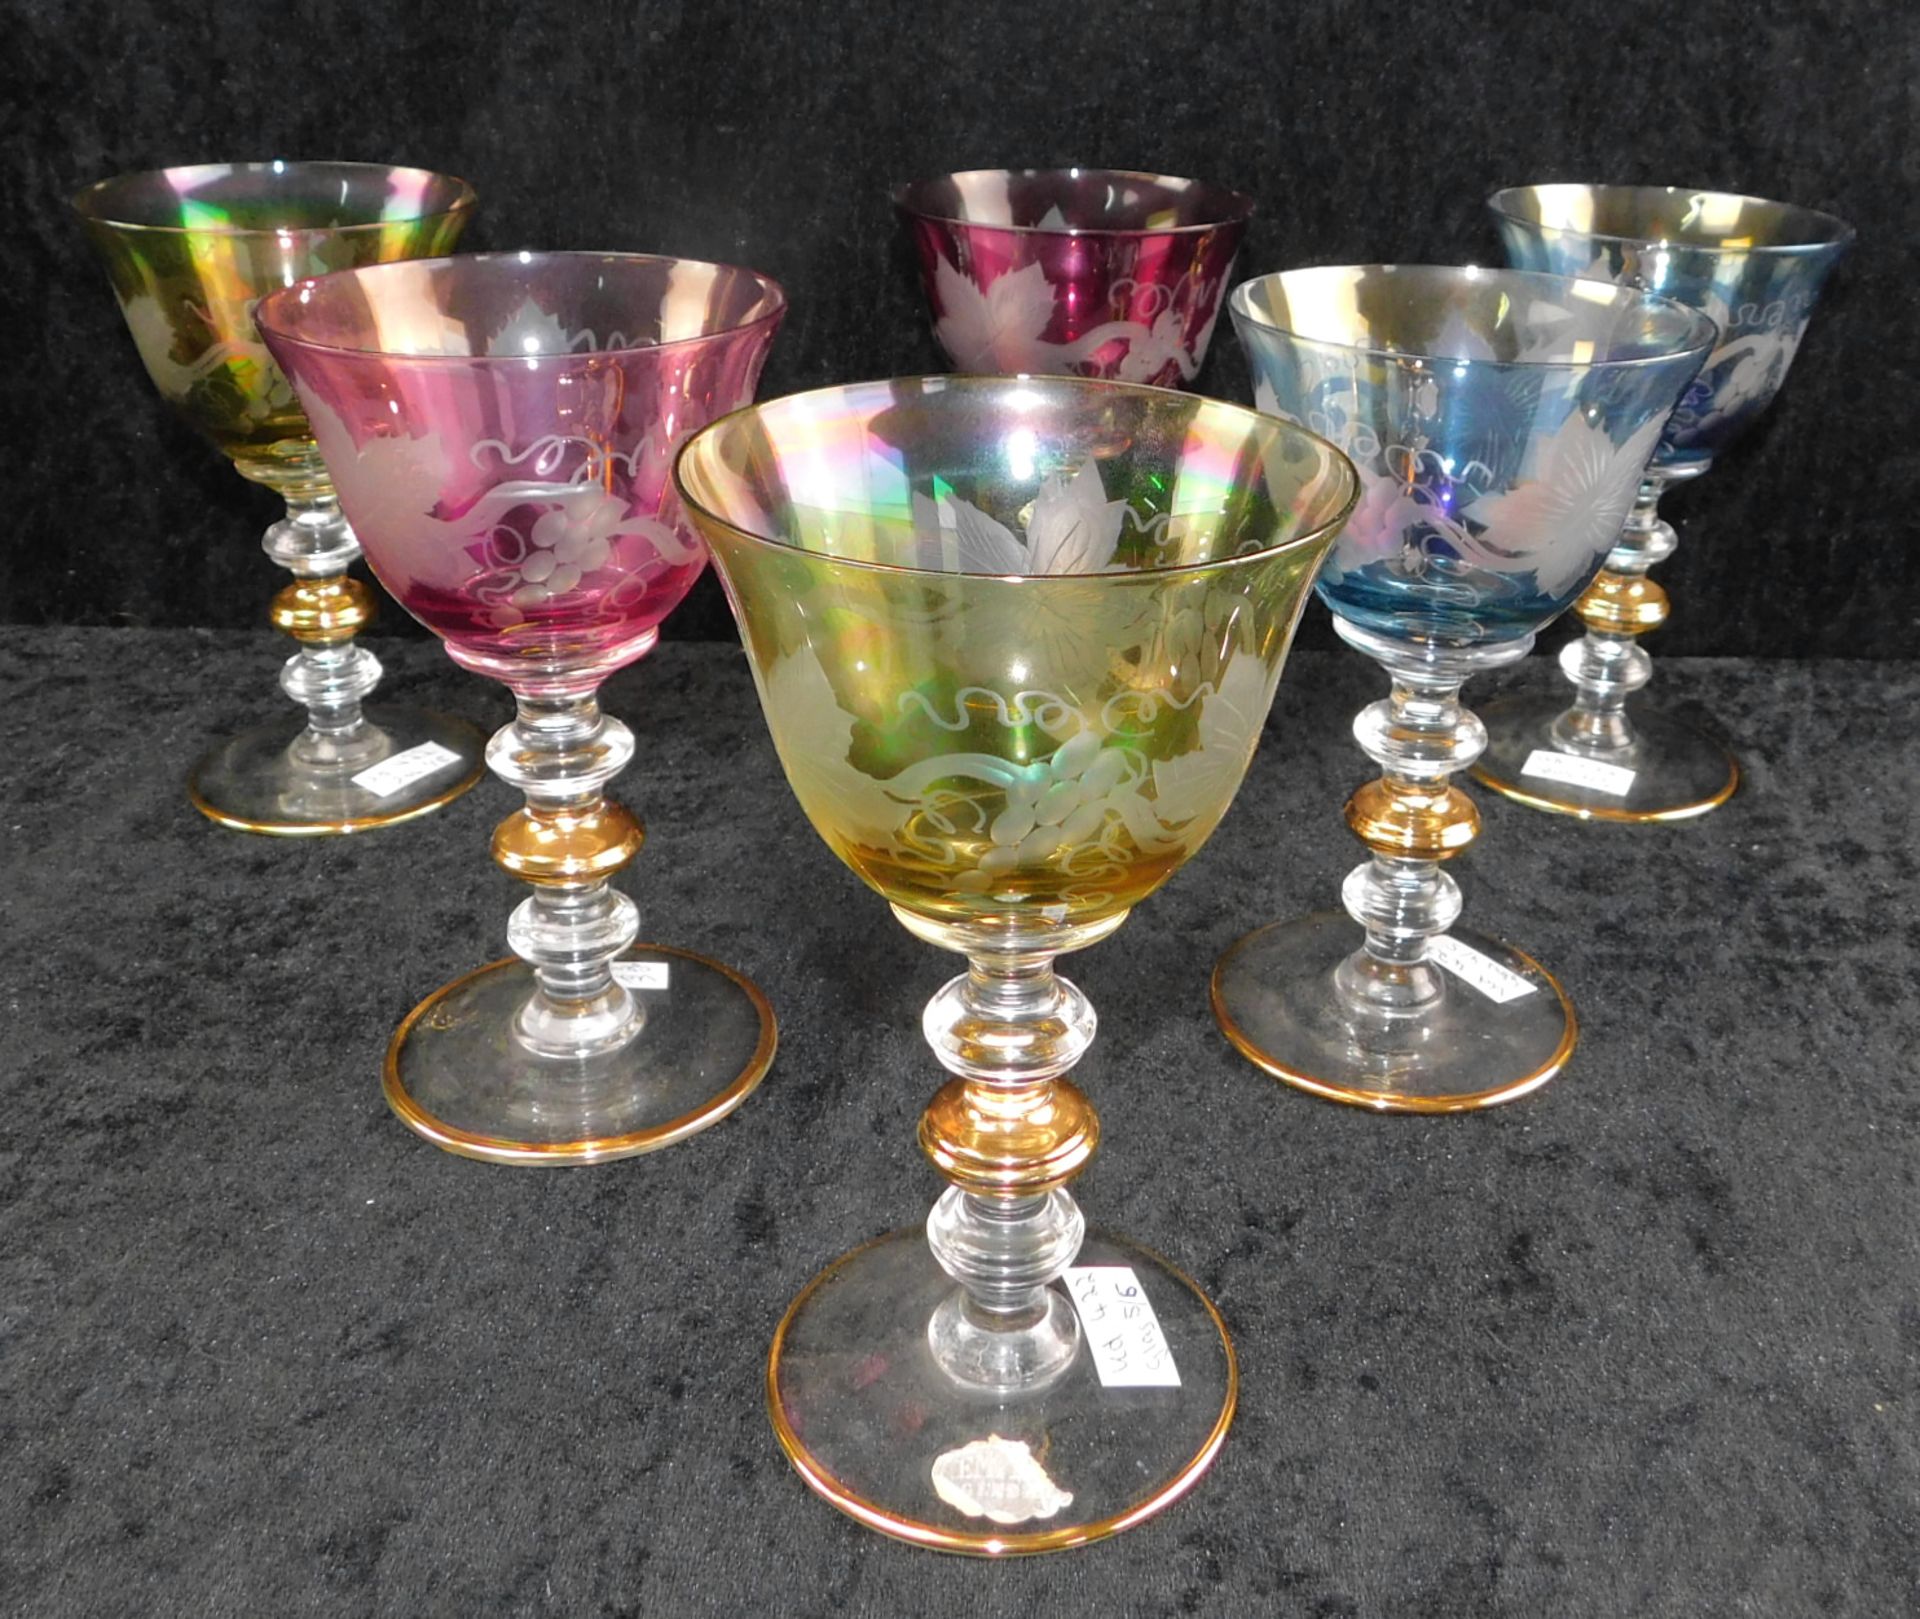 6 Weingläser, "Empire Gläser", Kristallglas geschliffen, Weinlaubdekor, farbig überfangen, St